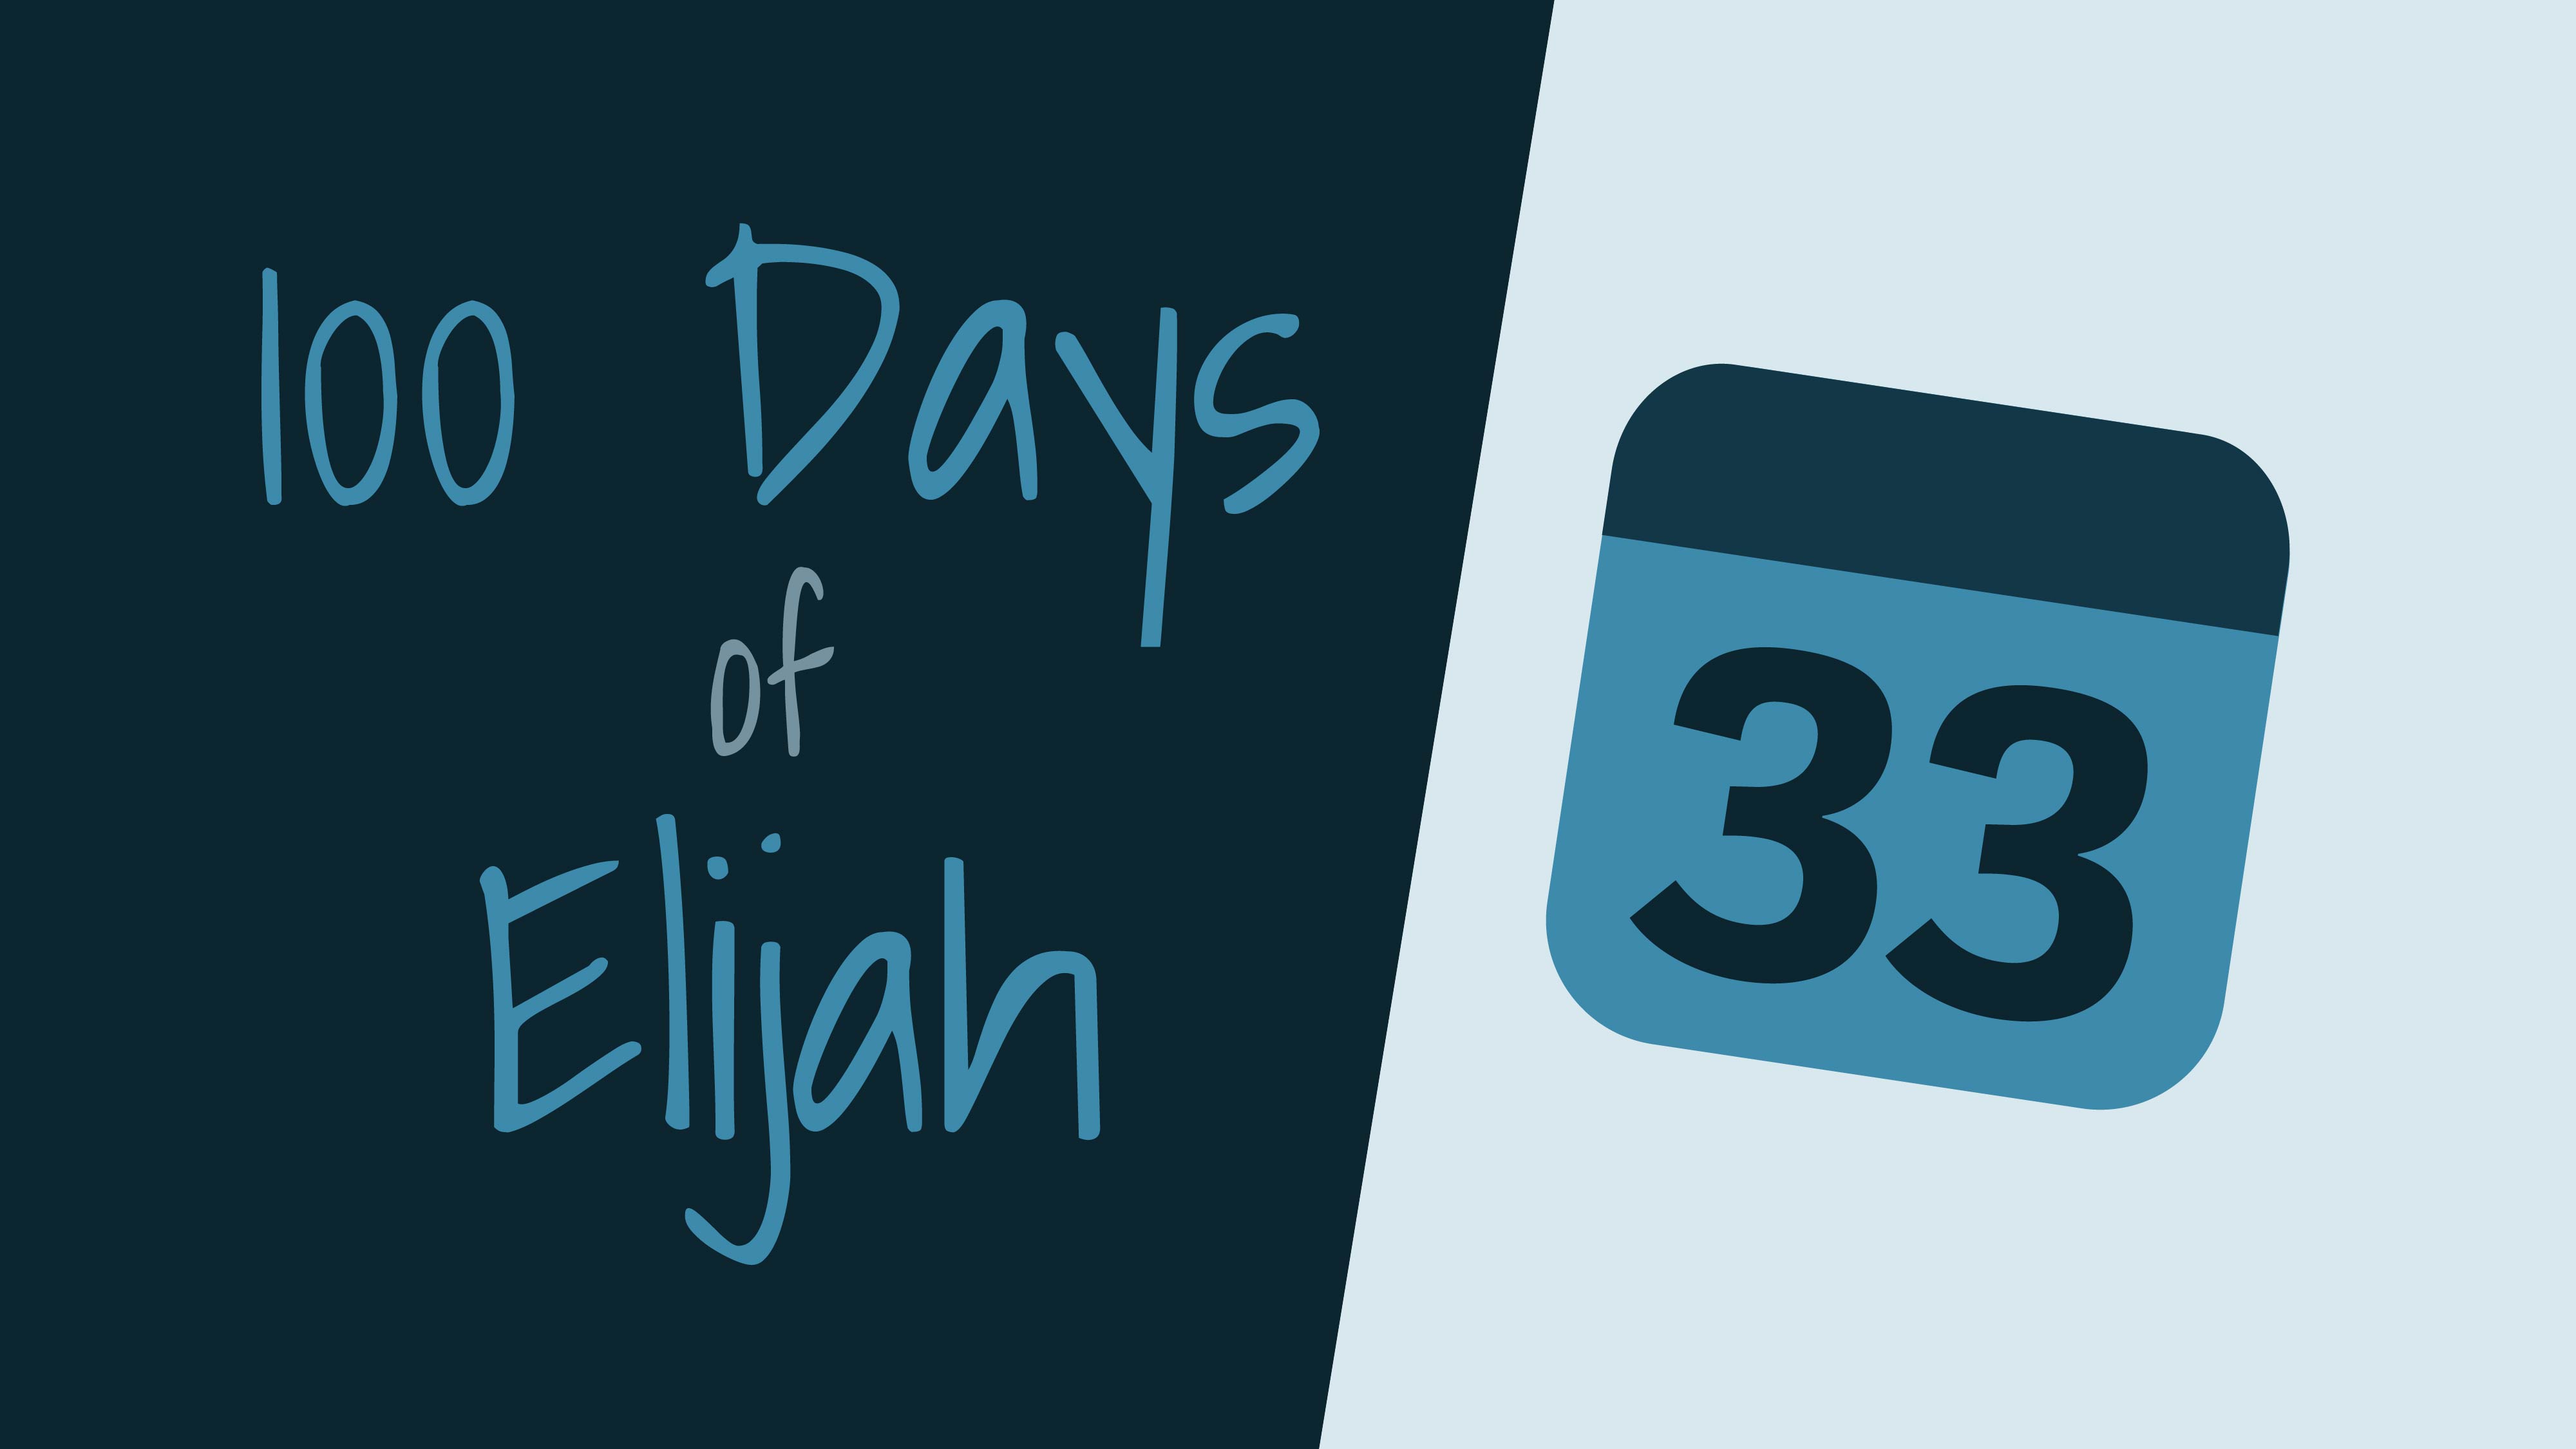 100 Days of Elijah: Day 33